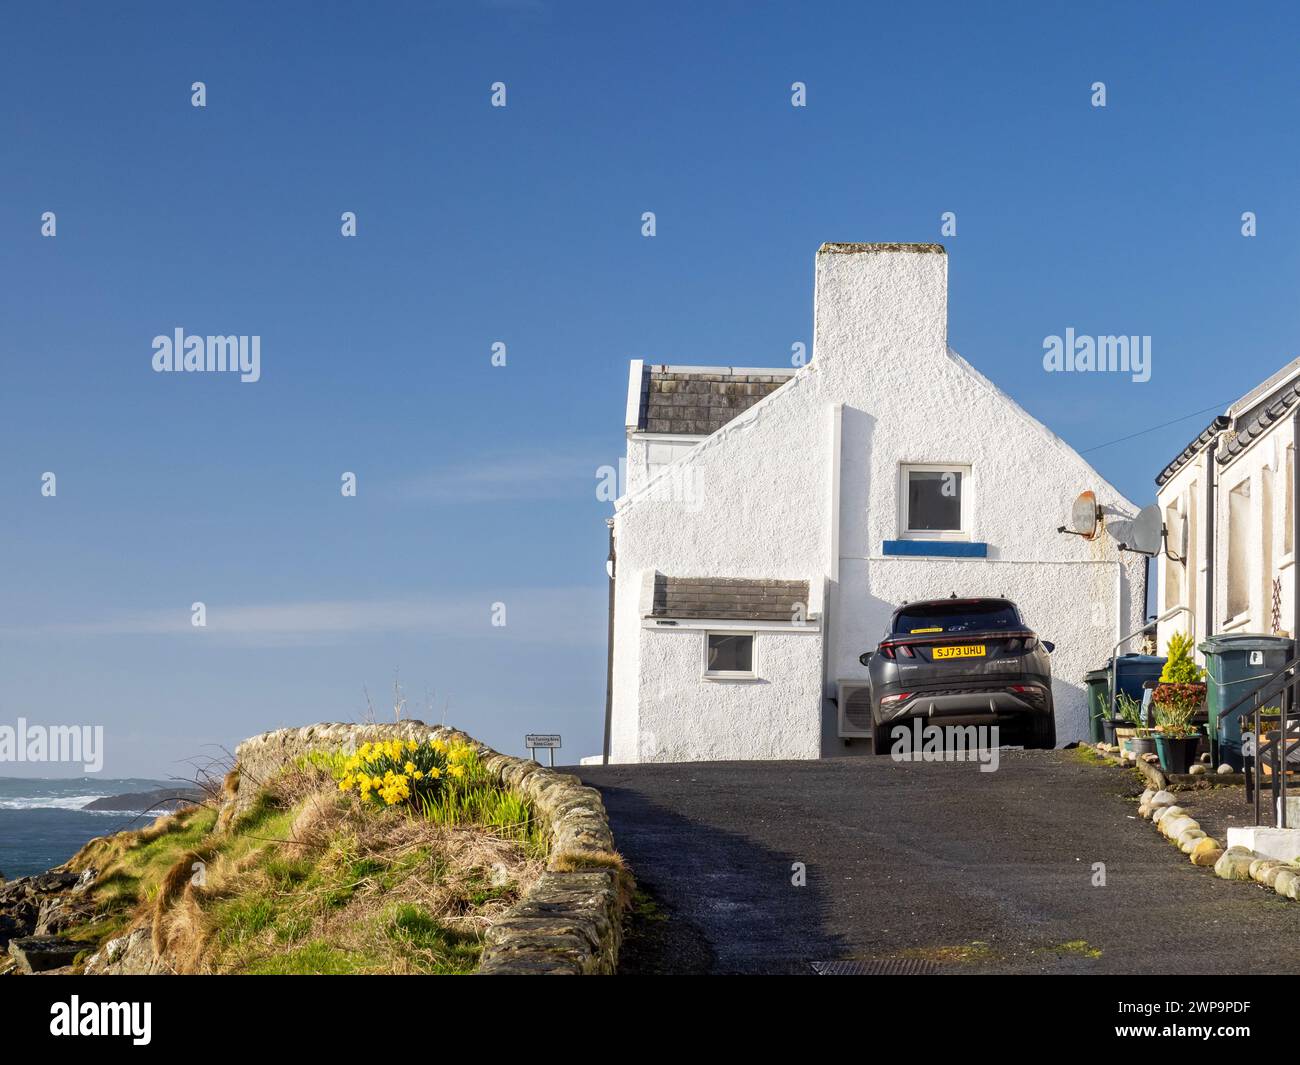 Portnahaven on Islay, Scotland, UK. Stock Photo